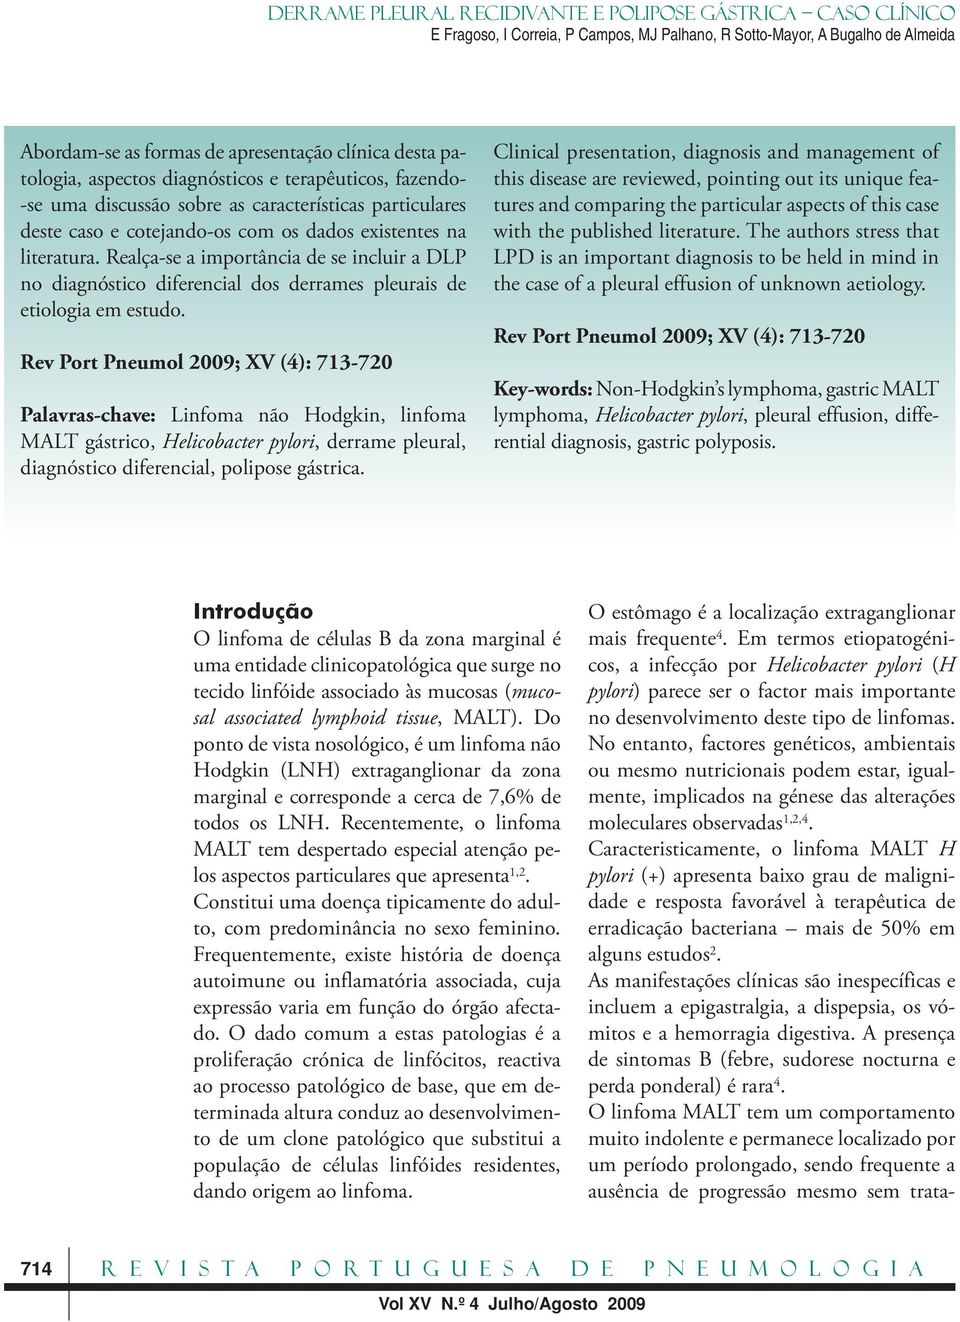 Rev Port Pneumol 2009; XV (4): 713-720 Palavras-chave: Linfoma não Hodgkin, linfoma MALT gástrico, Helicobacter pylori, derrame pleural, diagnóstico diferencial, polipose gástrica.